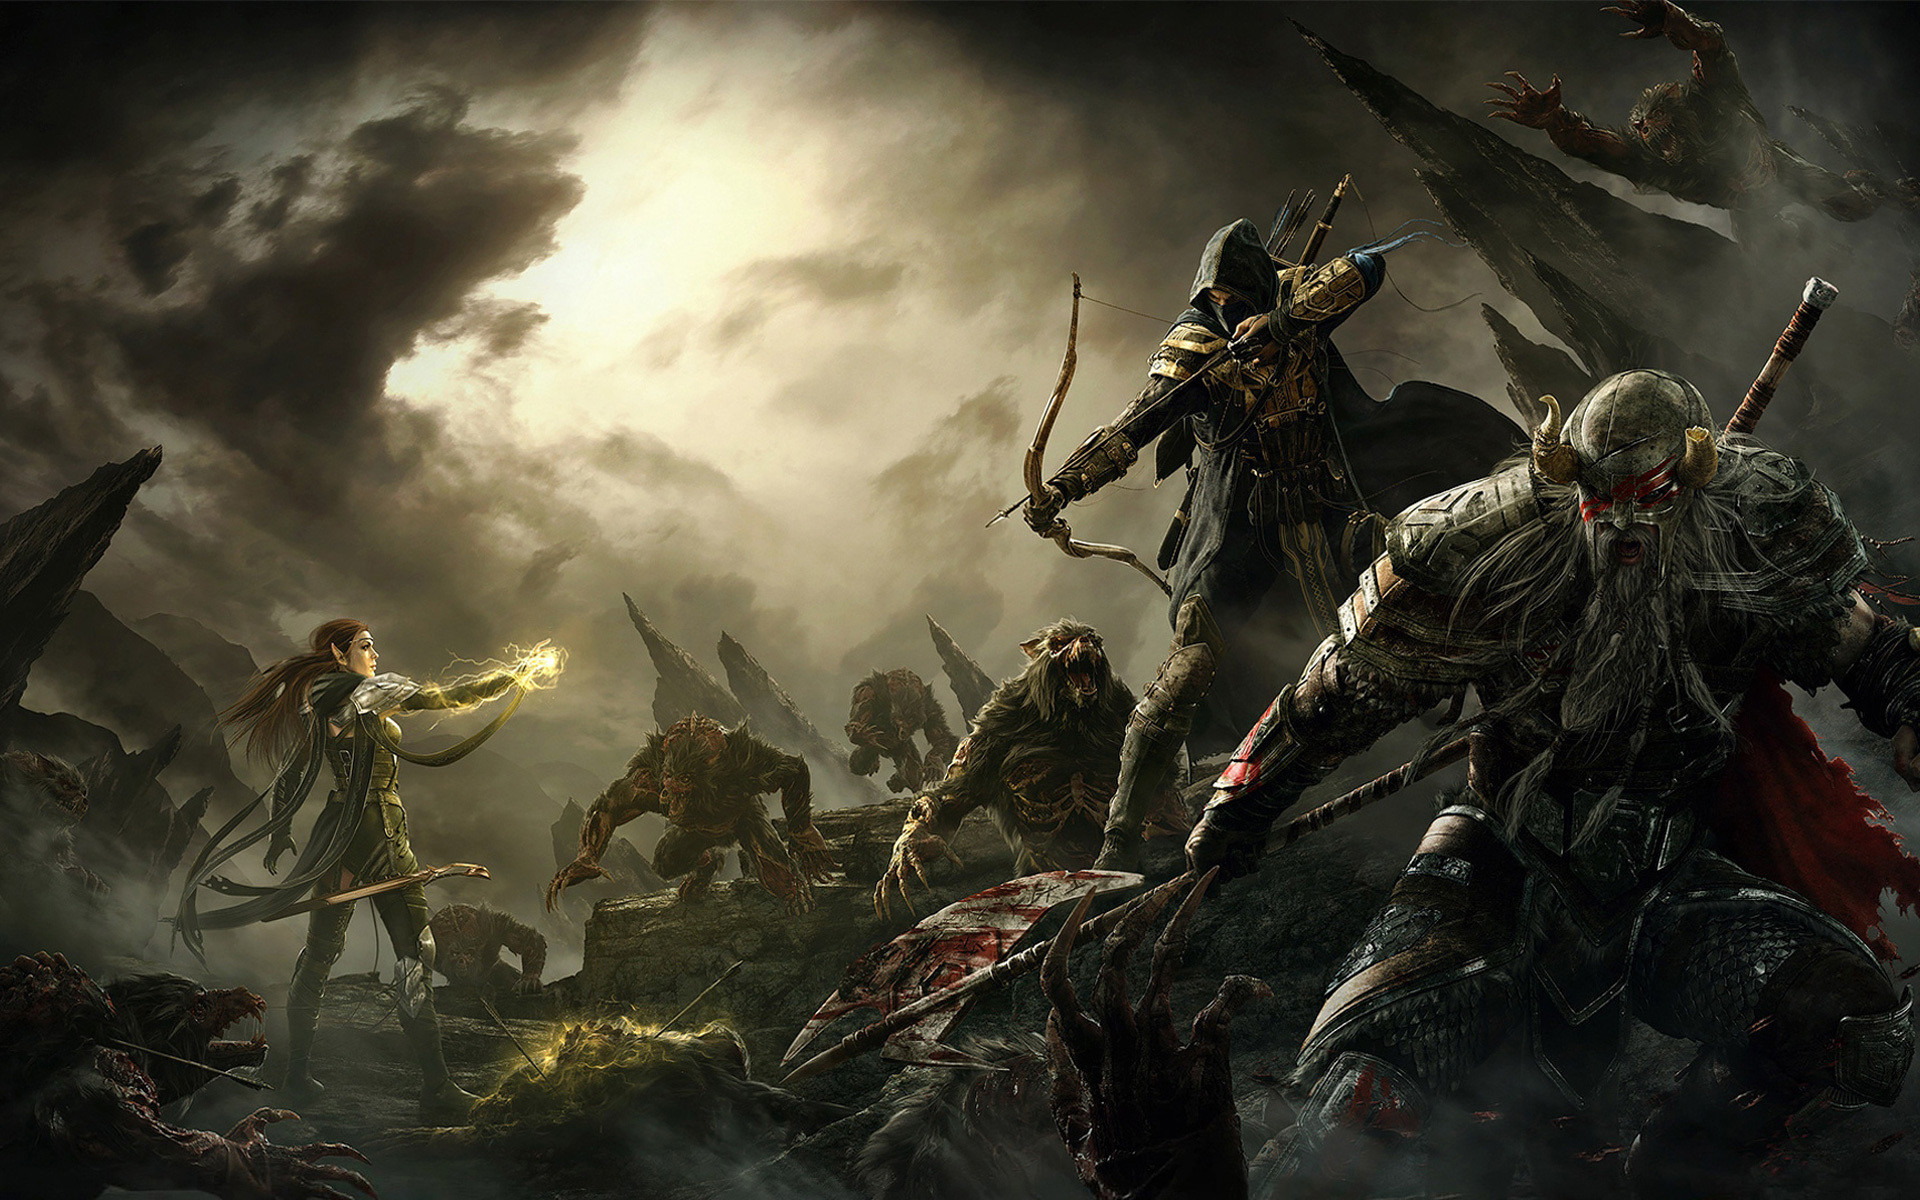 1920x1200 Elder Scrolls V Skyrim Warriors Archer Men Monster Armor Game Fantasy  battle magic wallpaper background | Video Games | Pinterest | Armor games,  ...